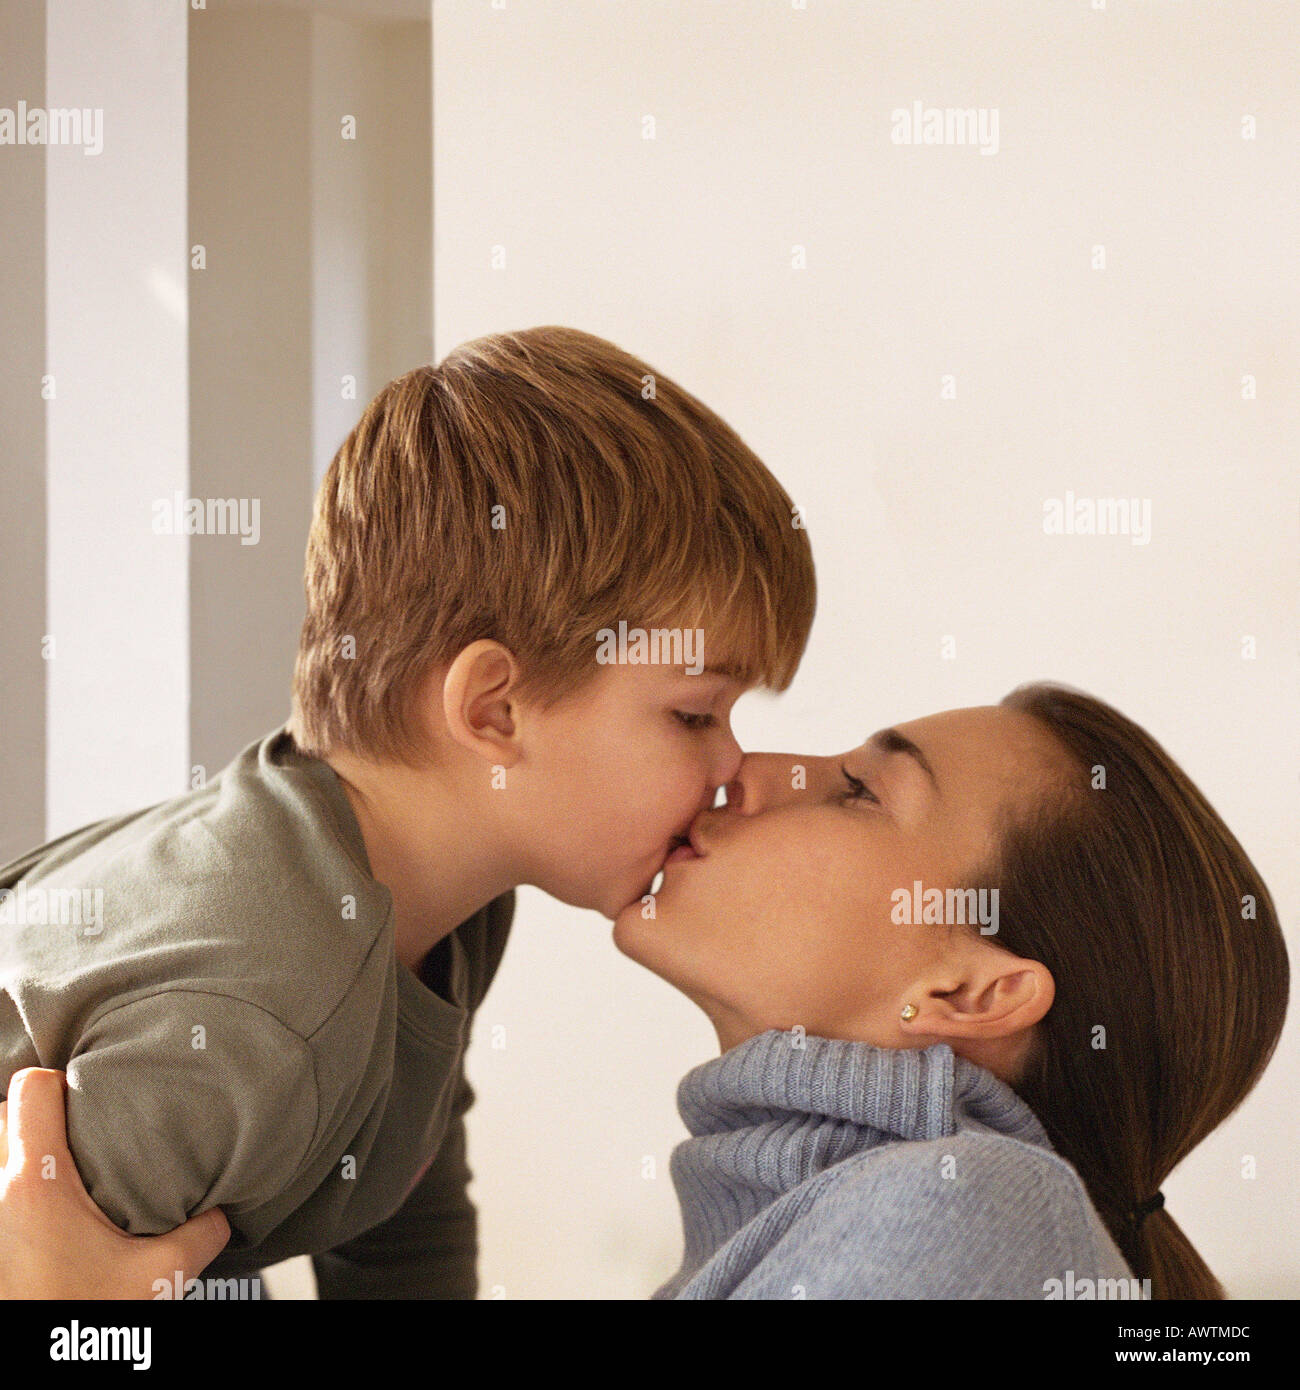 Mom son boy. Поцелуй матери и сына. Поцелуй матери и подростка. Мальчик целует маму с языком. Поцелуй матери и сына с языком.